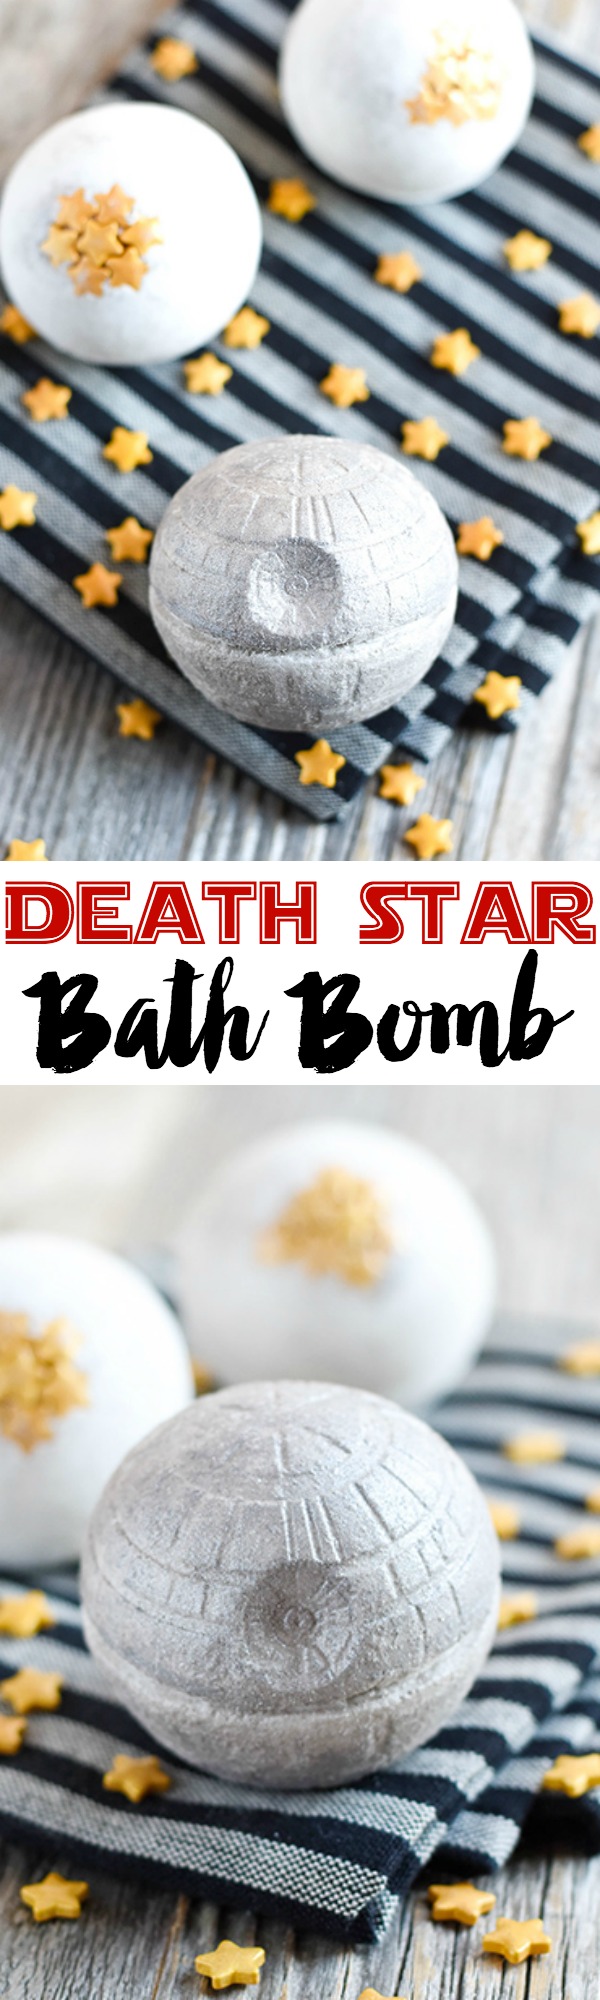 DIY-Death-Star-Bath-Bomb